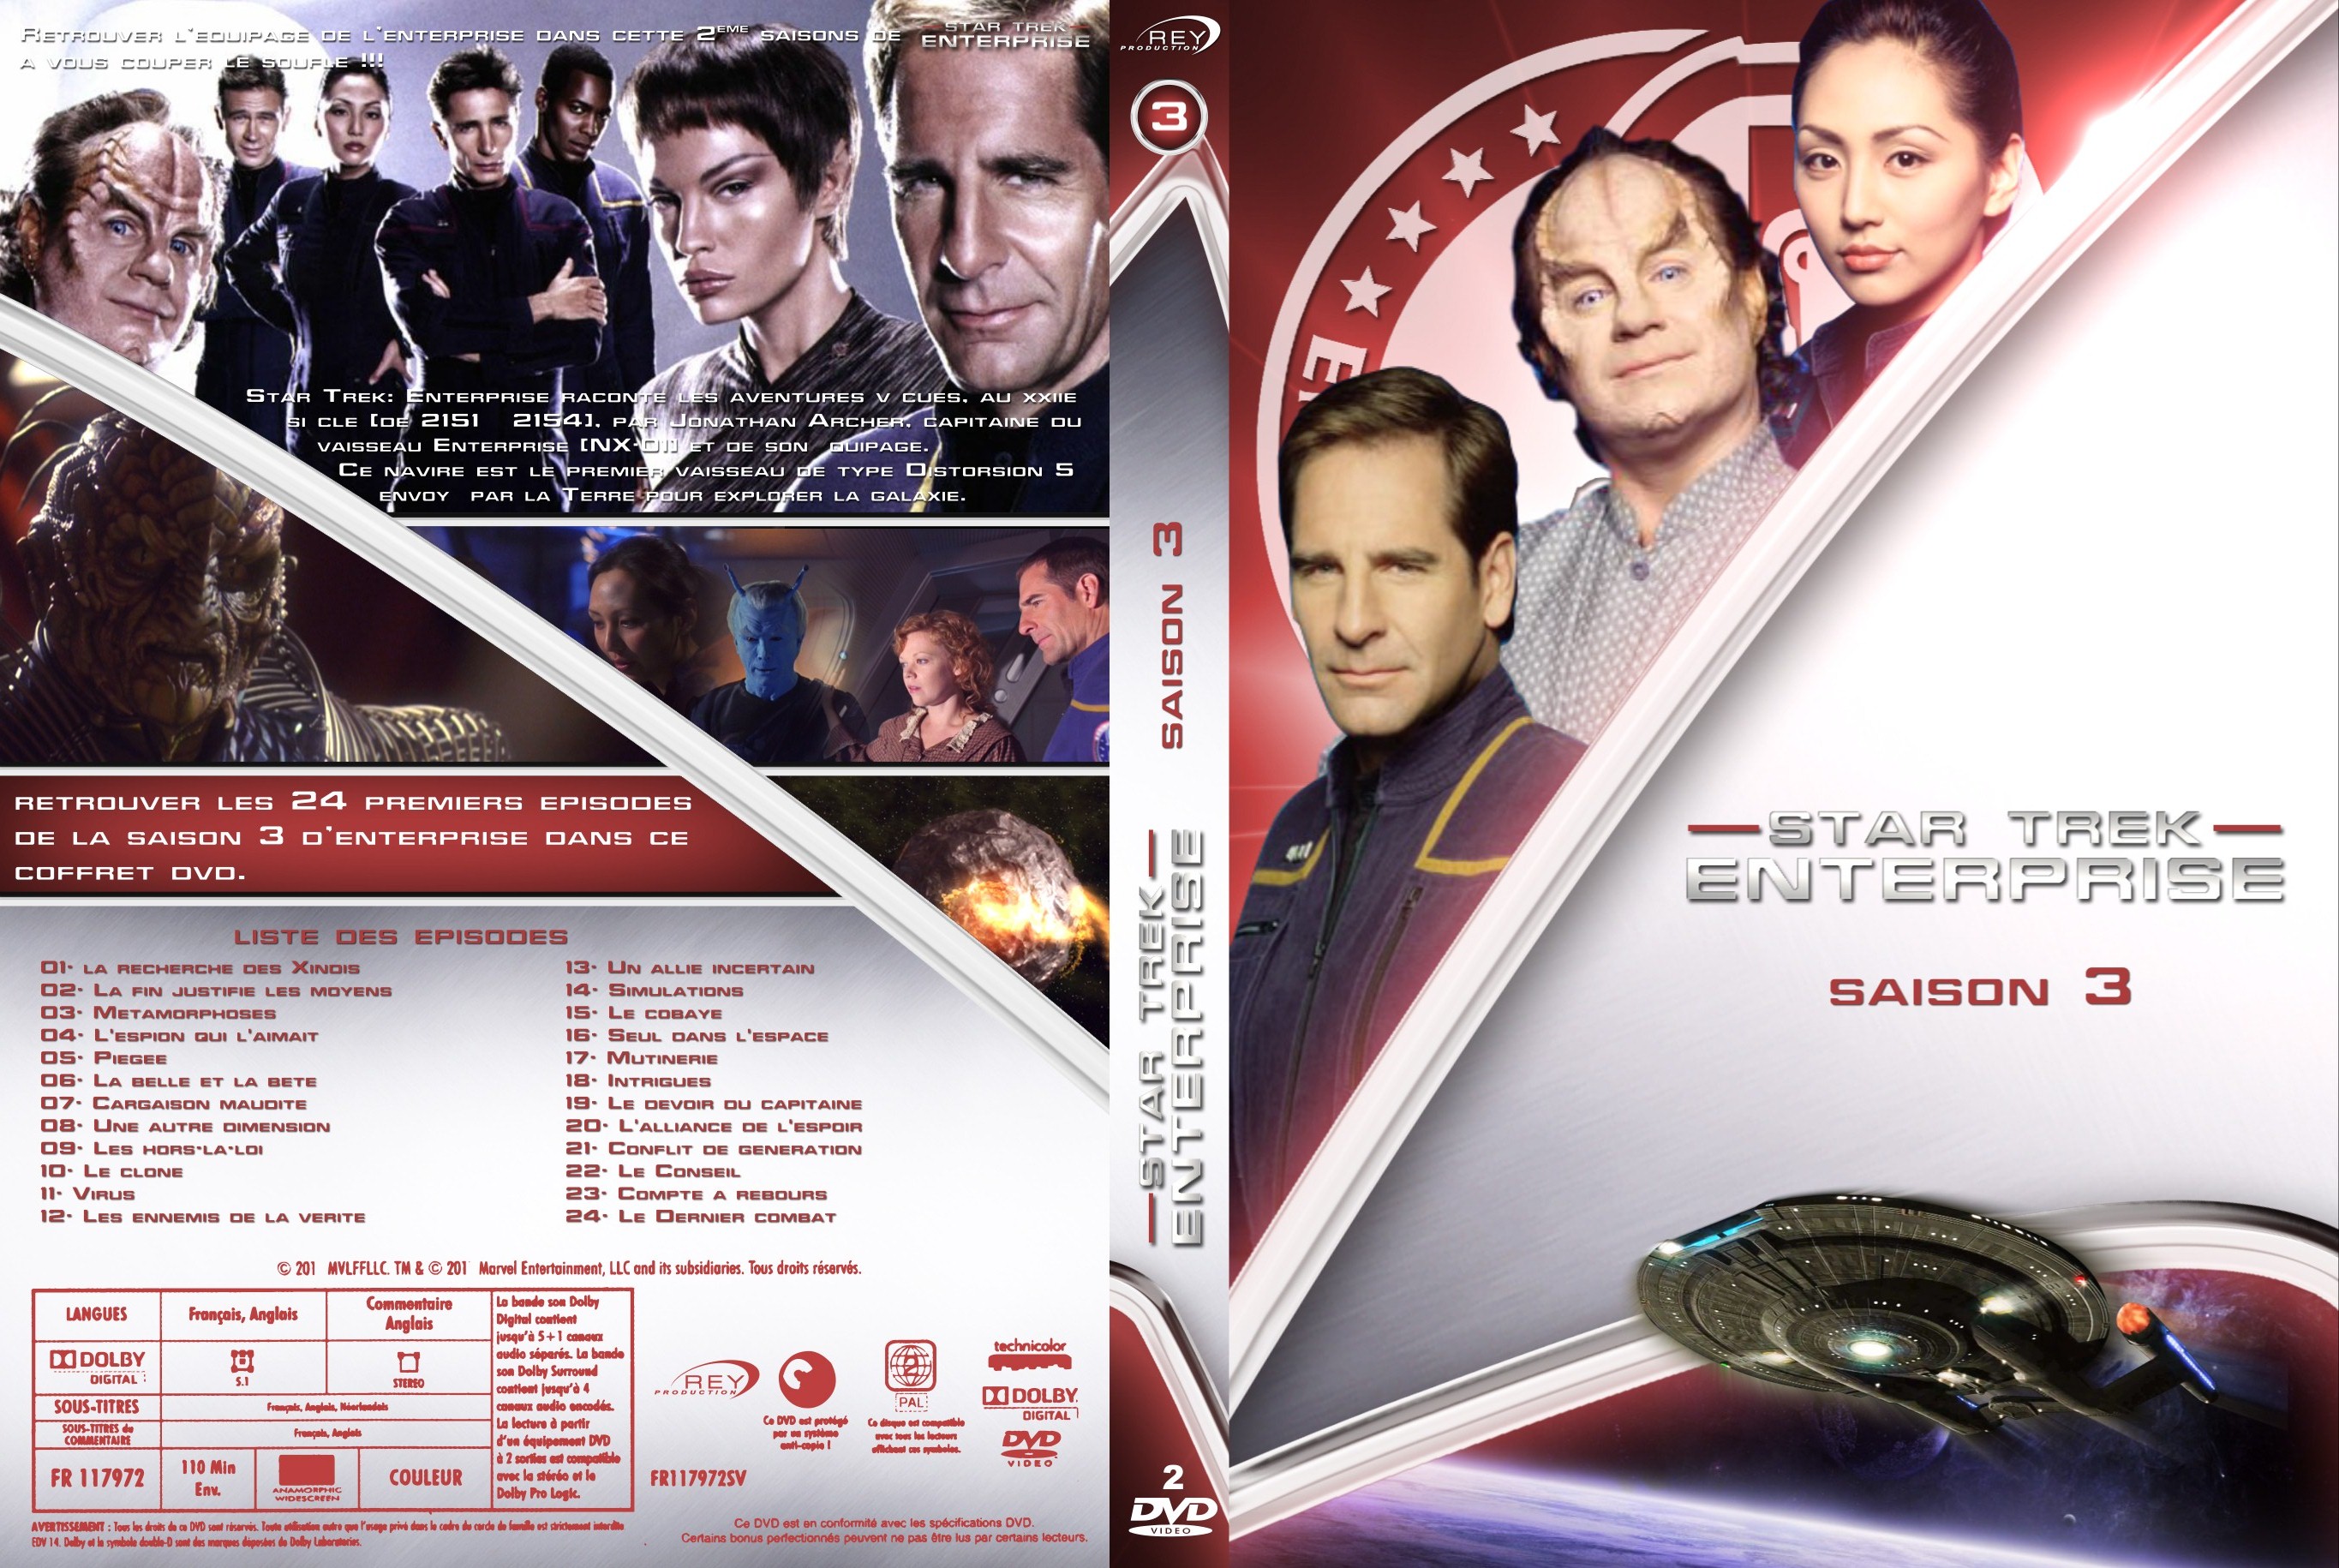 Jaquette DVD Star Trek Enterprise saison 3 custom